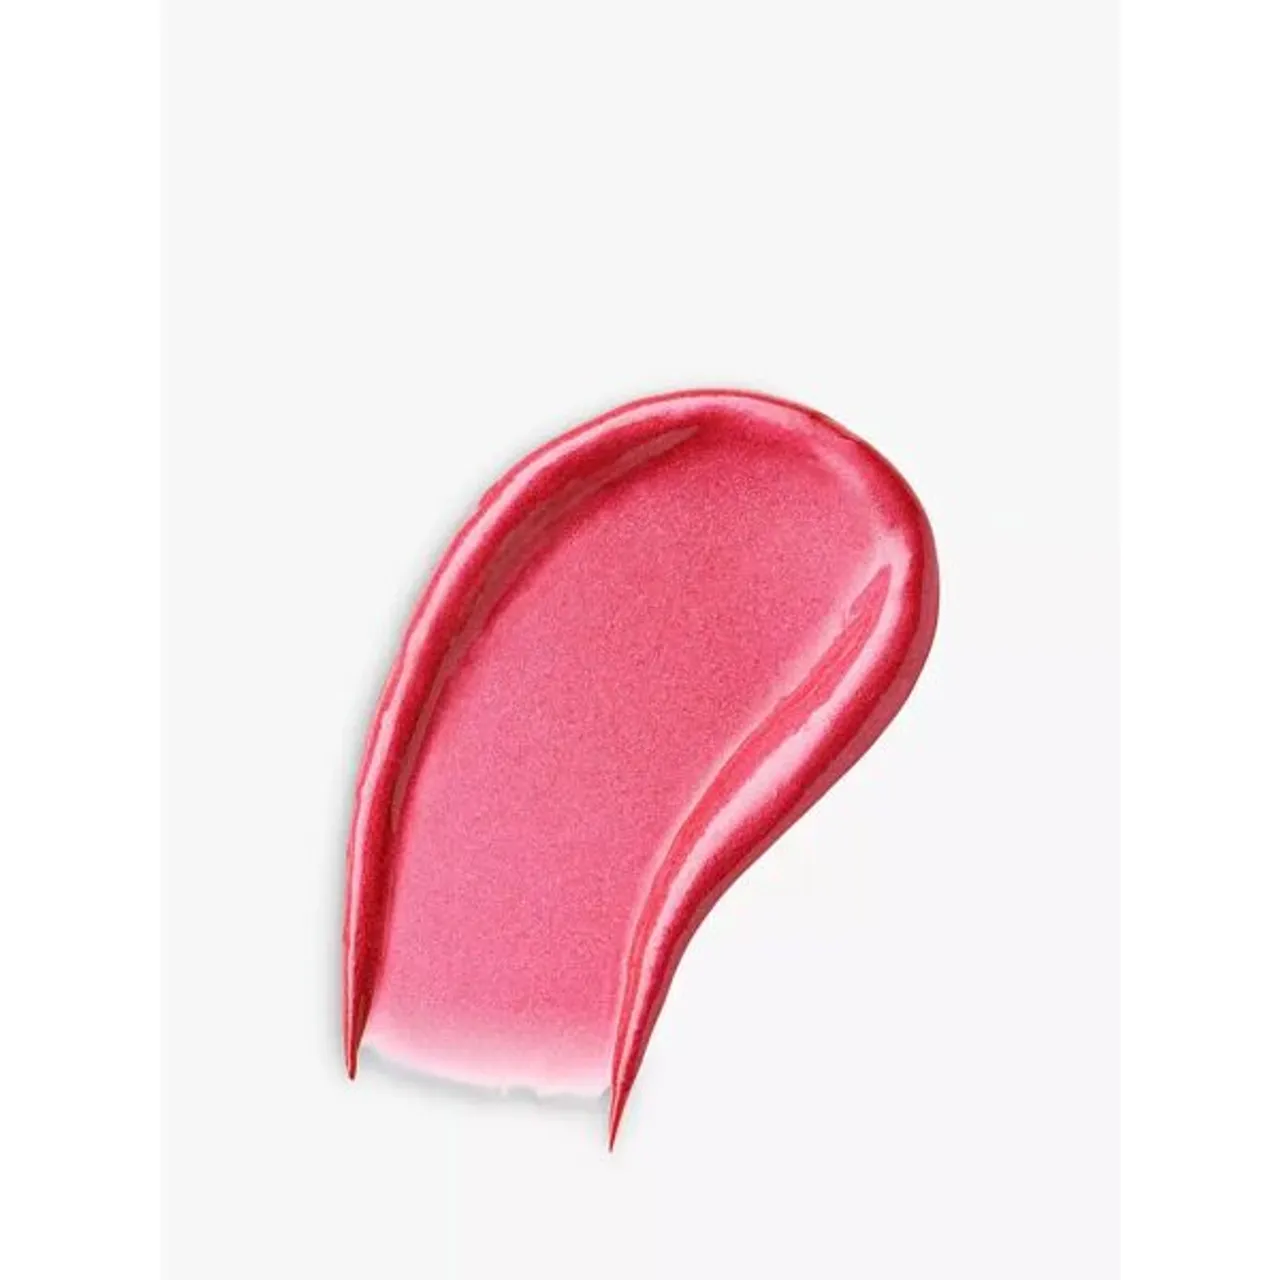 LancÃ´me L'Absolu Rouge Cream Lipstick - 08 La Vie Est Belle - Unisex